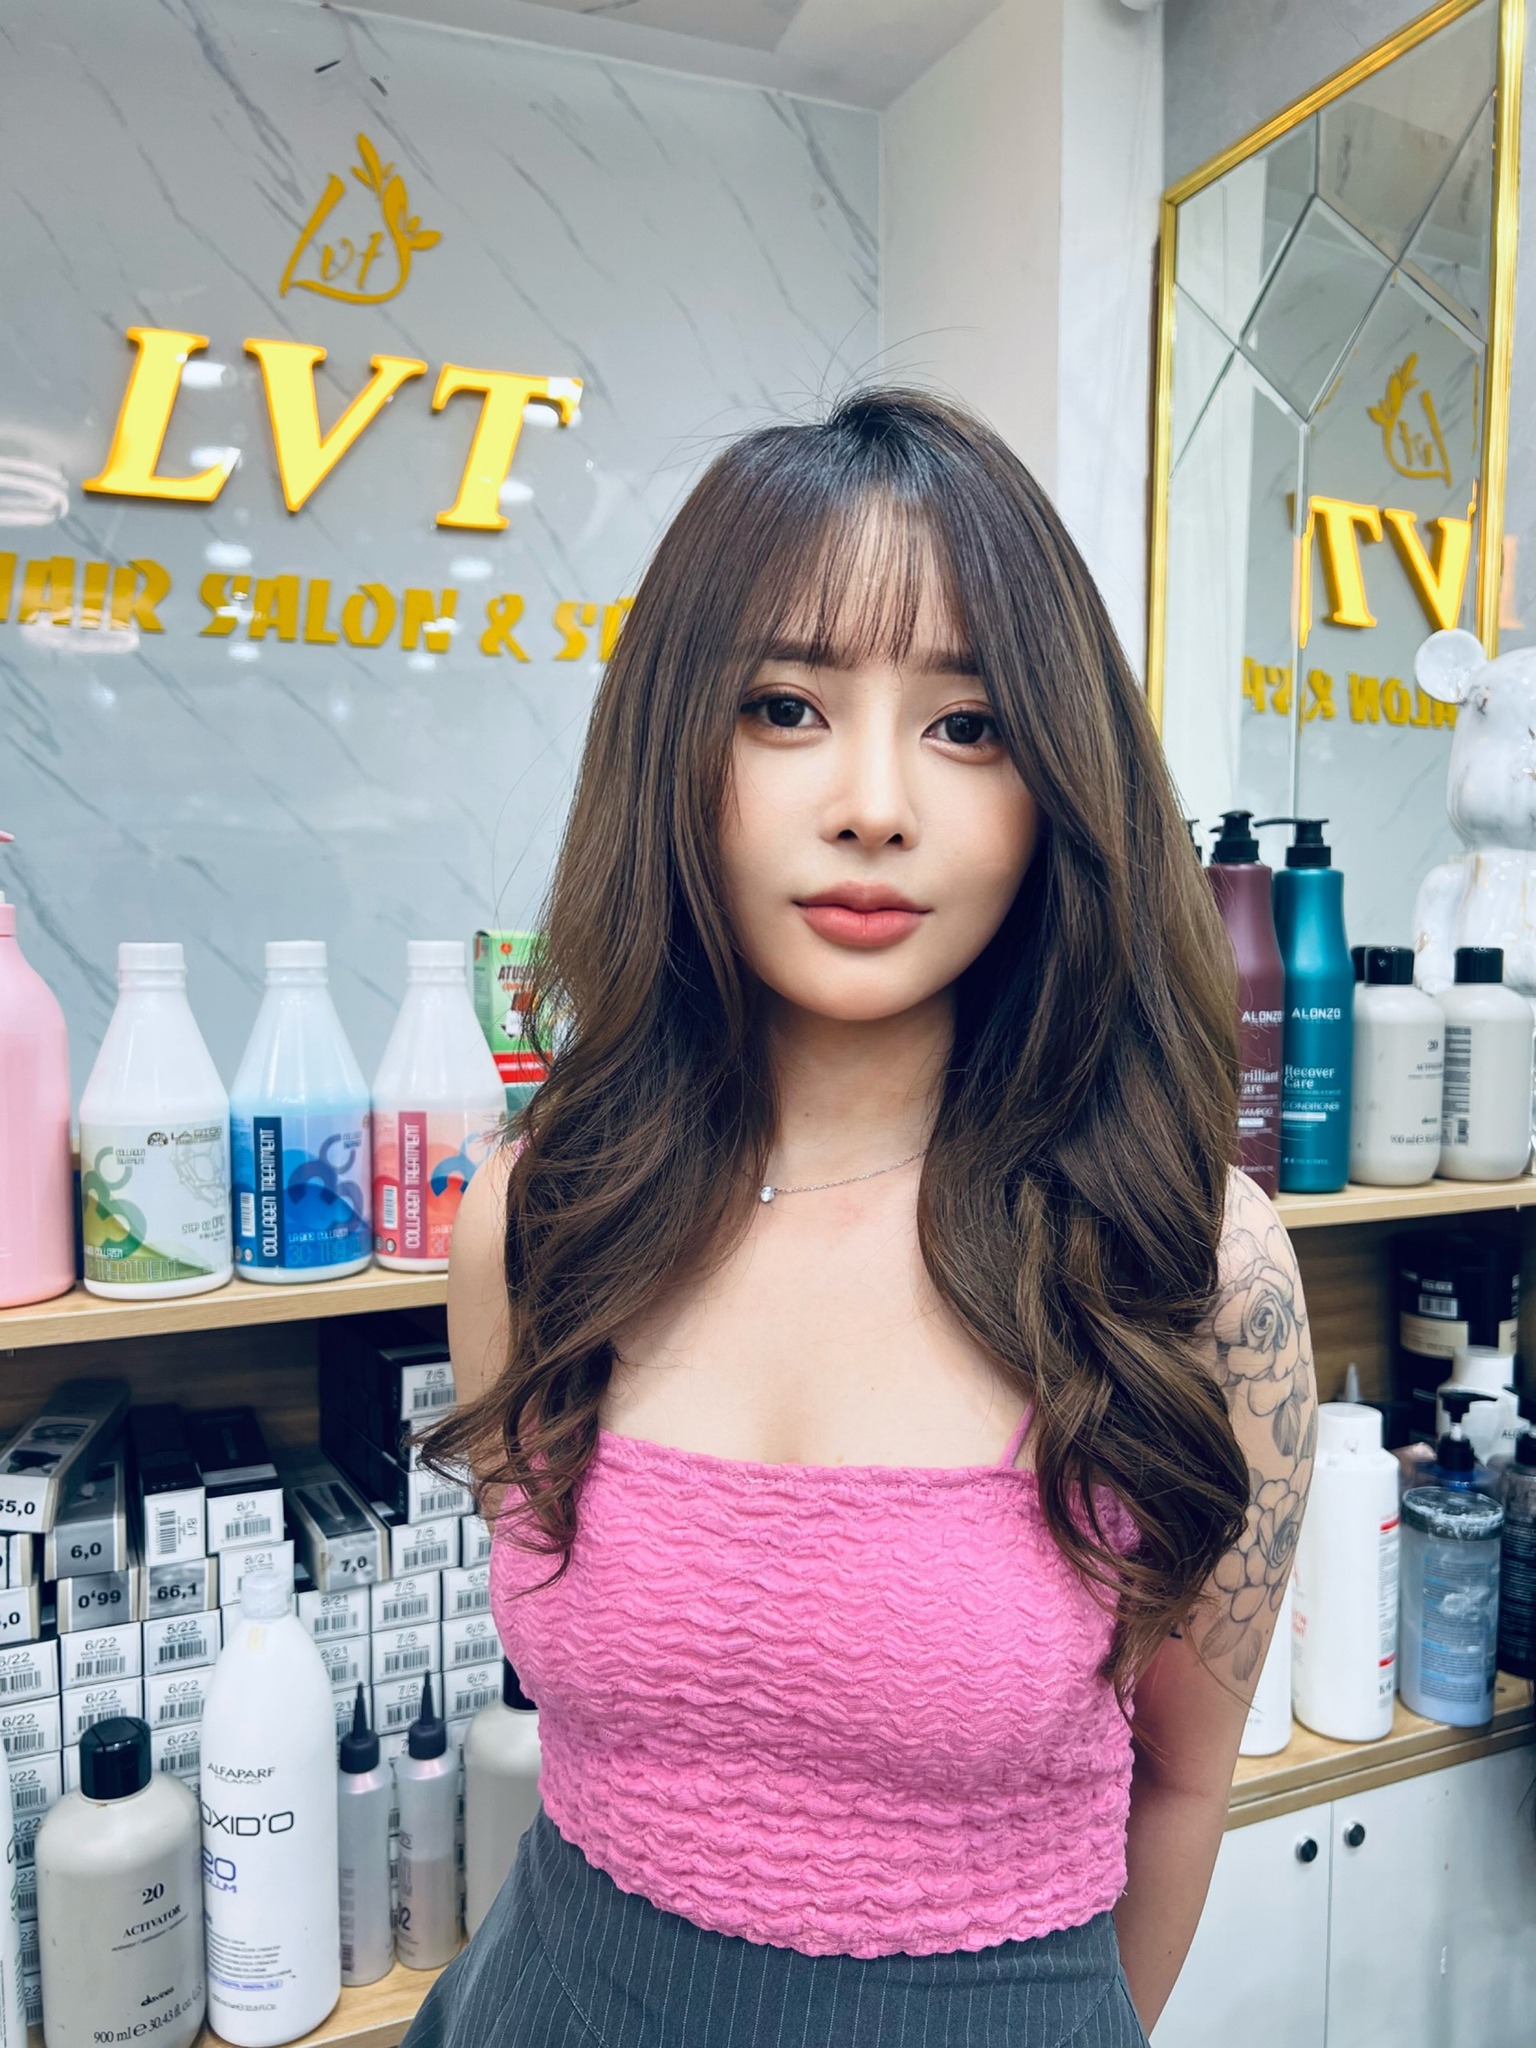 LVT - Hair Salon & Spa ảnh 1